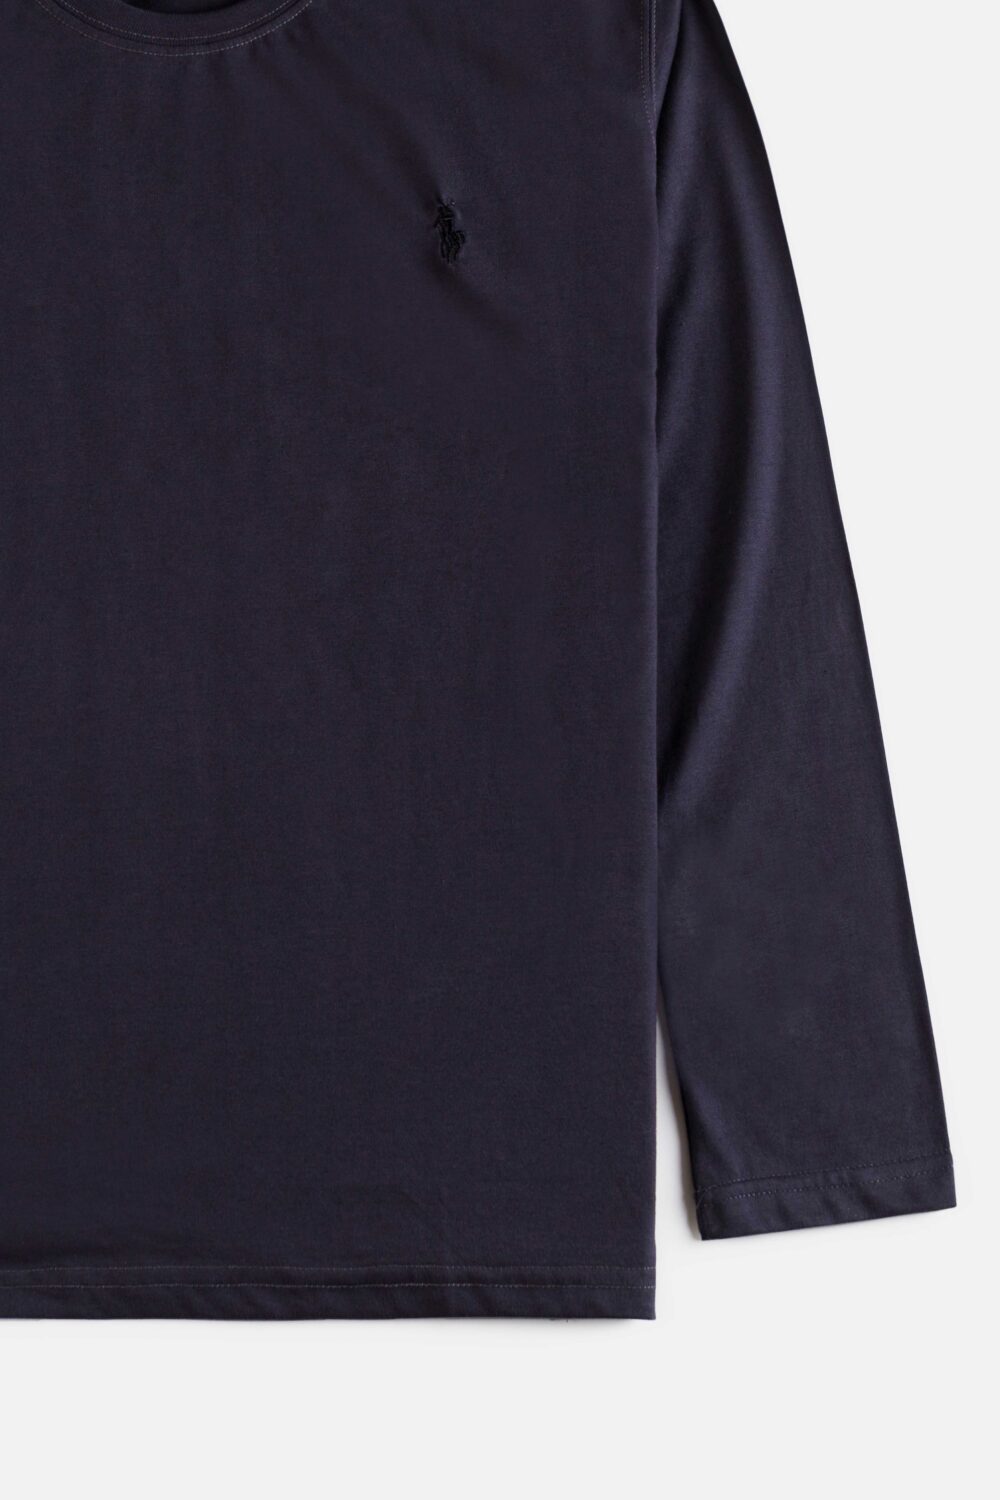 RL Premium Basic Full T Shirt – Matte Black